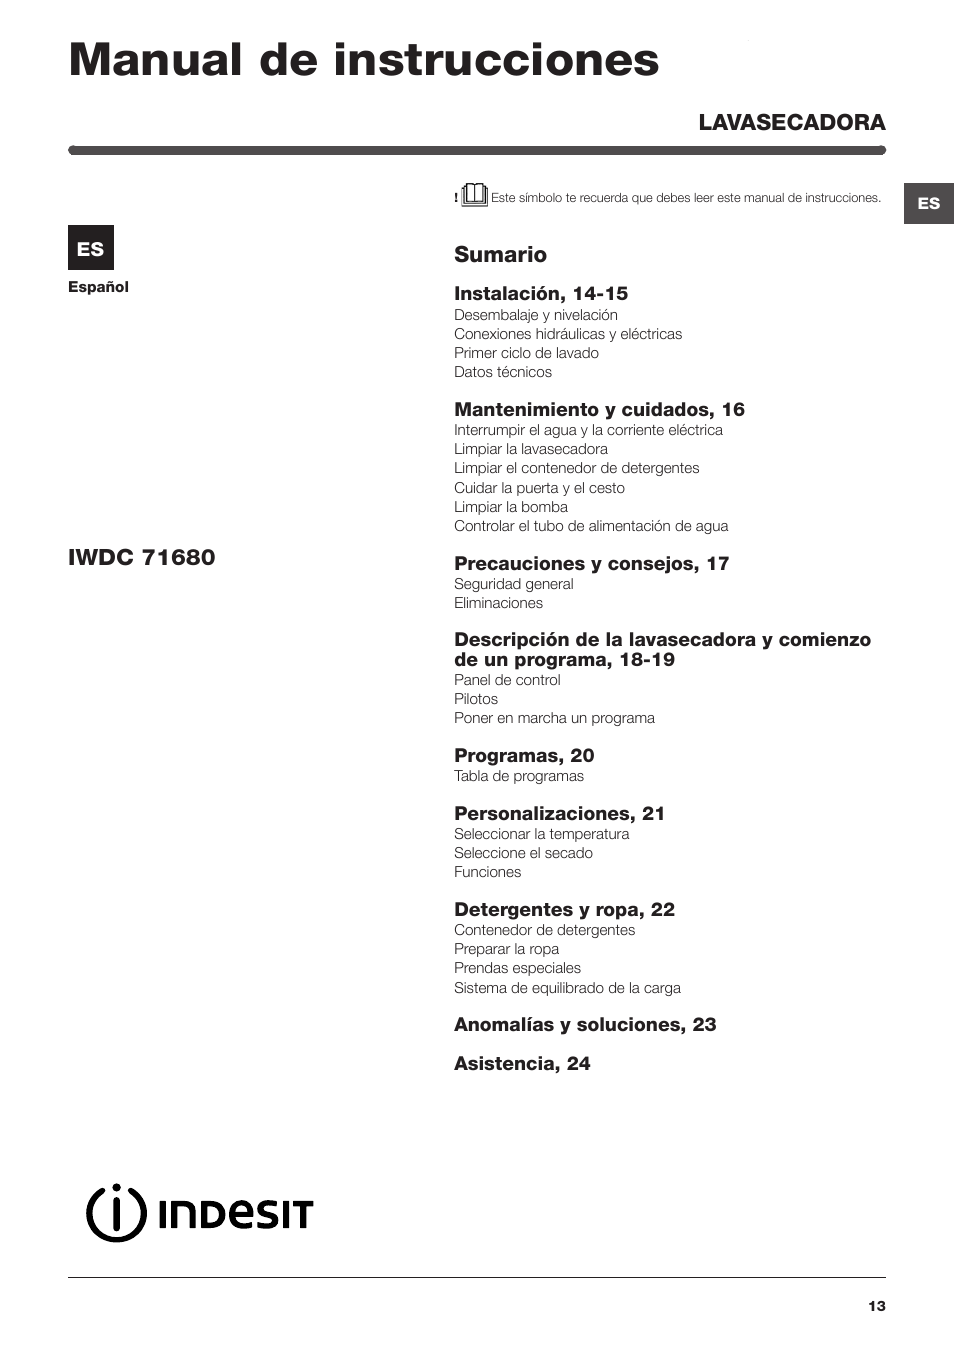 reptiles autobiografía Influencia Manual de instrucciones, Sumario, Lavasecadora | Indesit IWDC-71680-ECO-(EU)  User Manual | Page 13 / 84